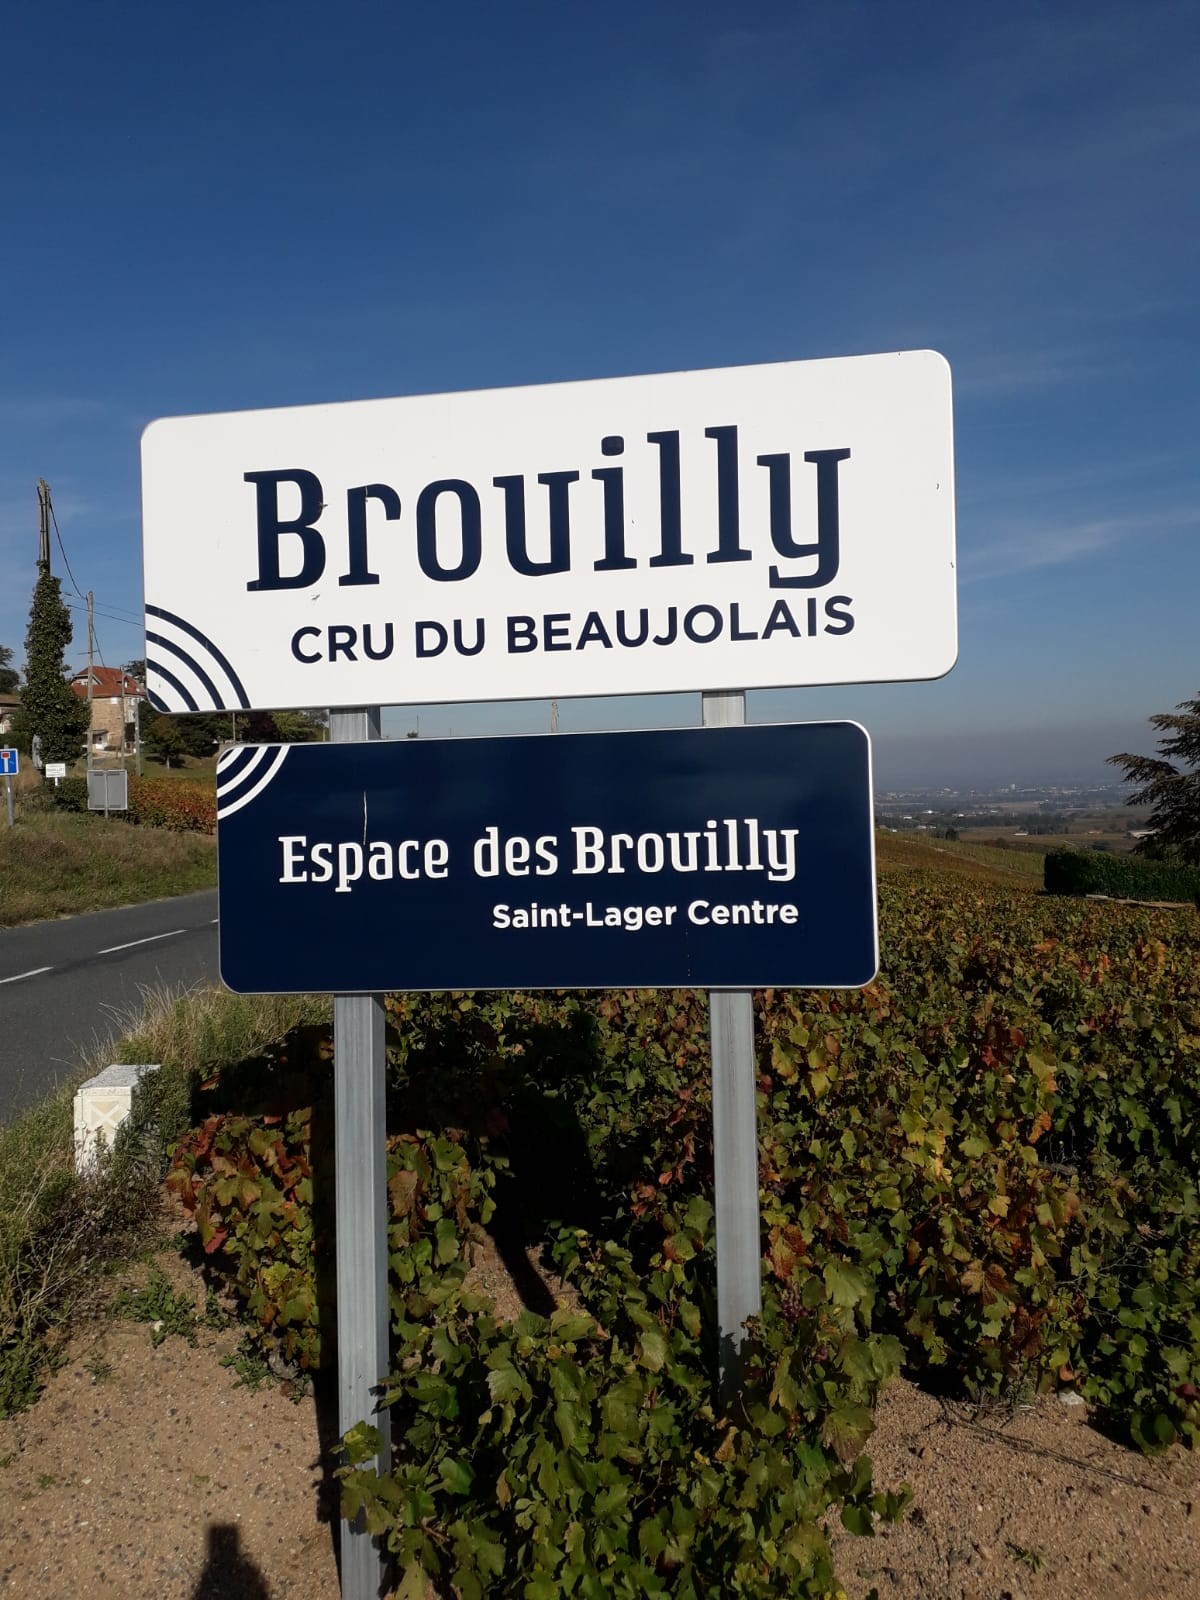 2021 r13 beaujolais circuit odenas brouilly 17 oct 3 